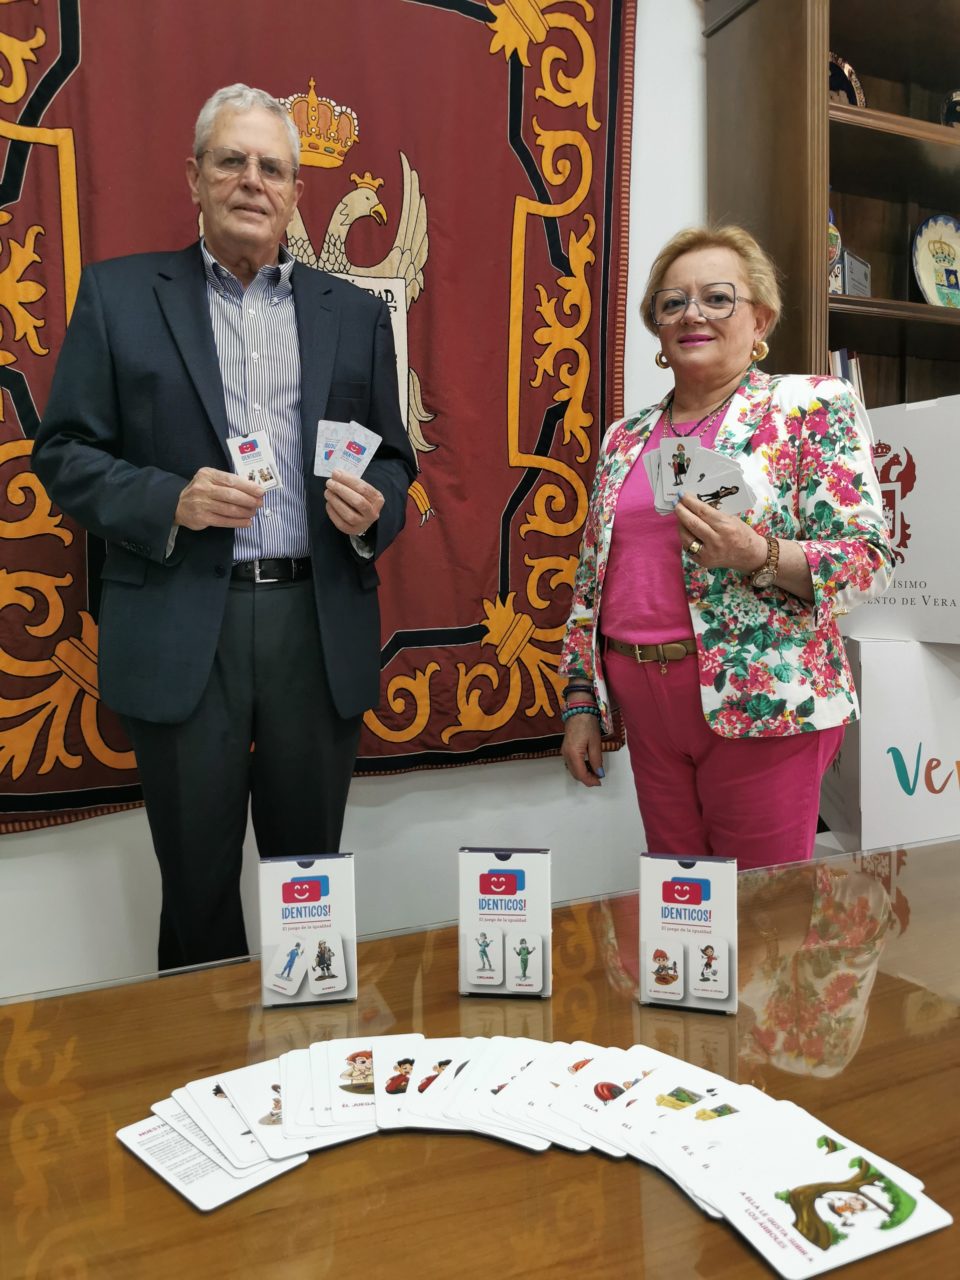 El Ayuntamiento de Vera distribuye juegos de cartas para concienciar a los jóvenes sobre la igualdad